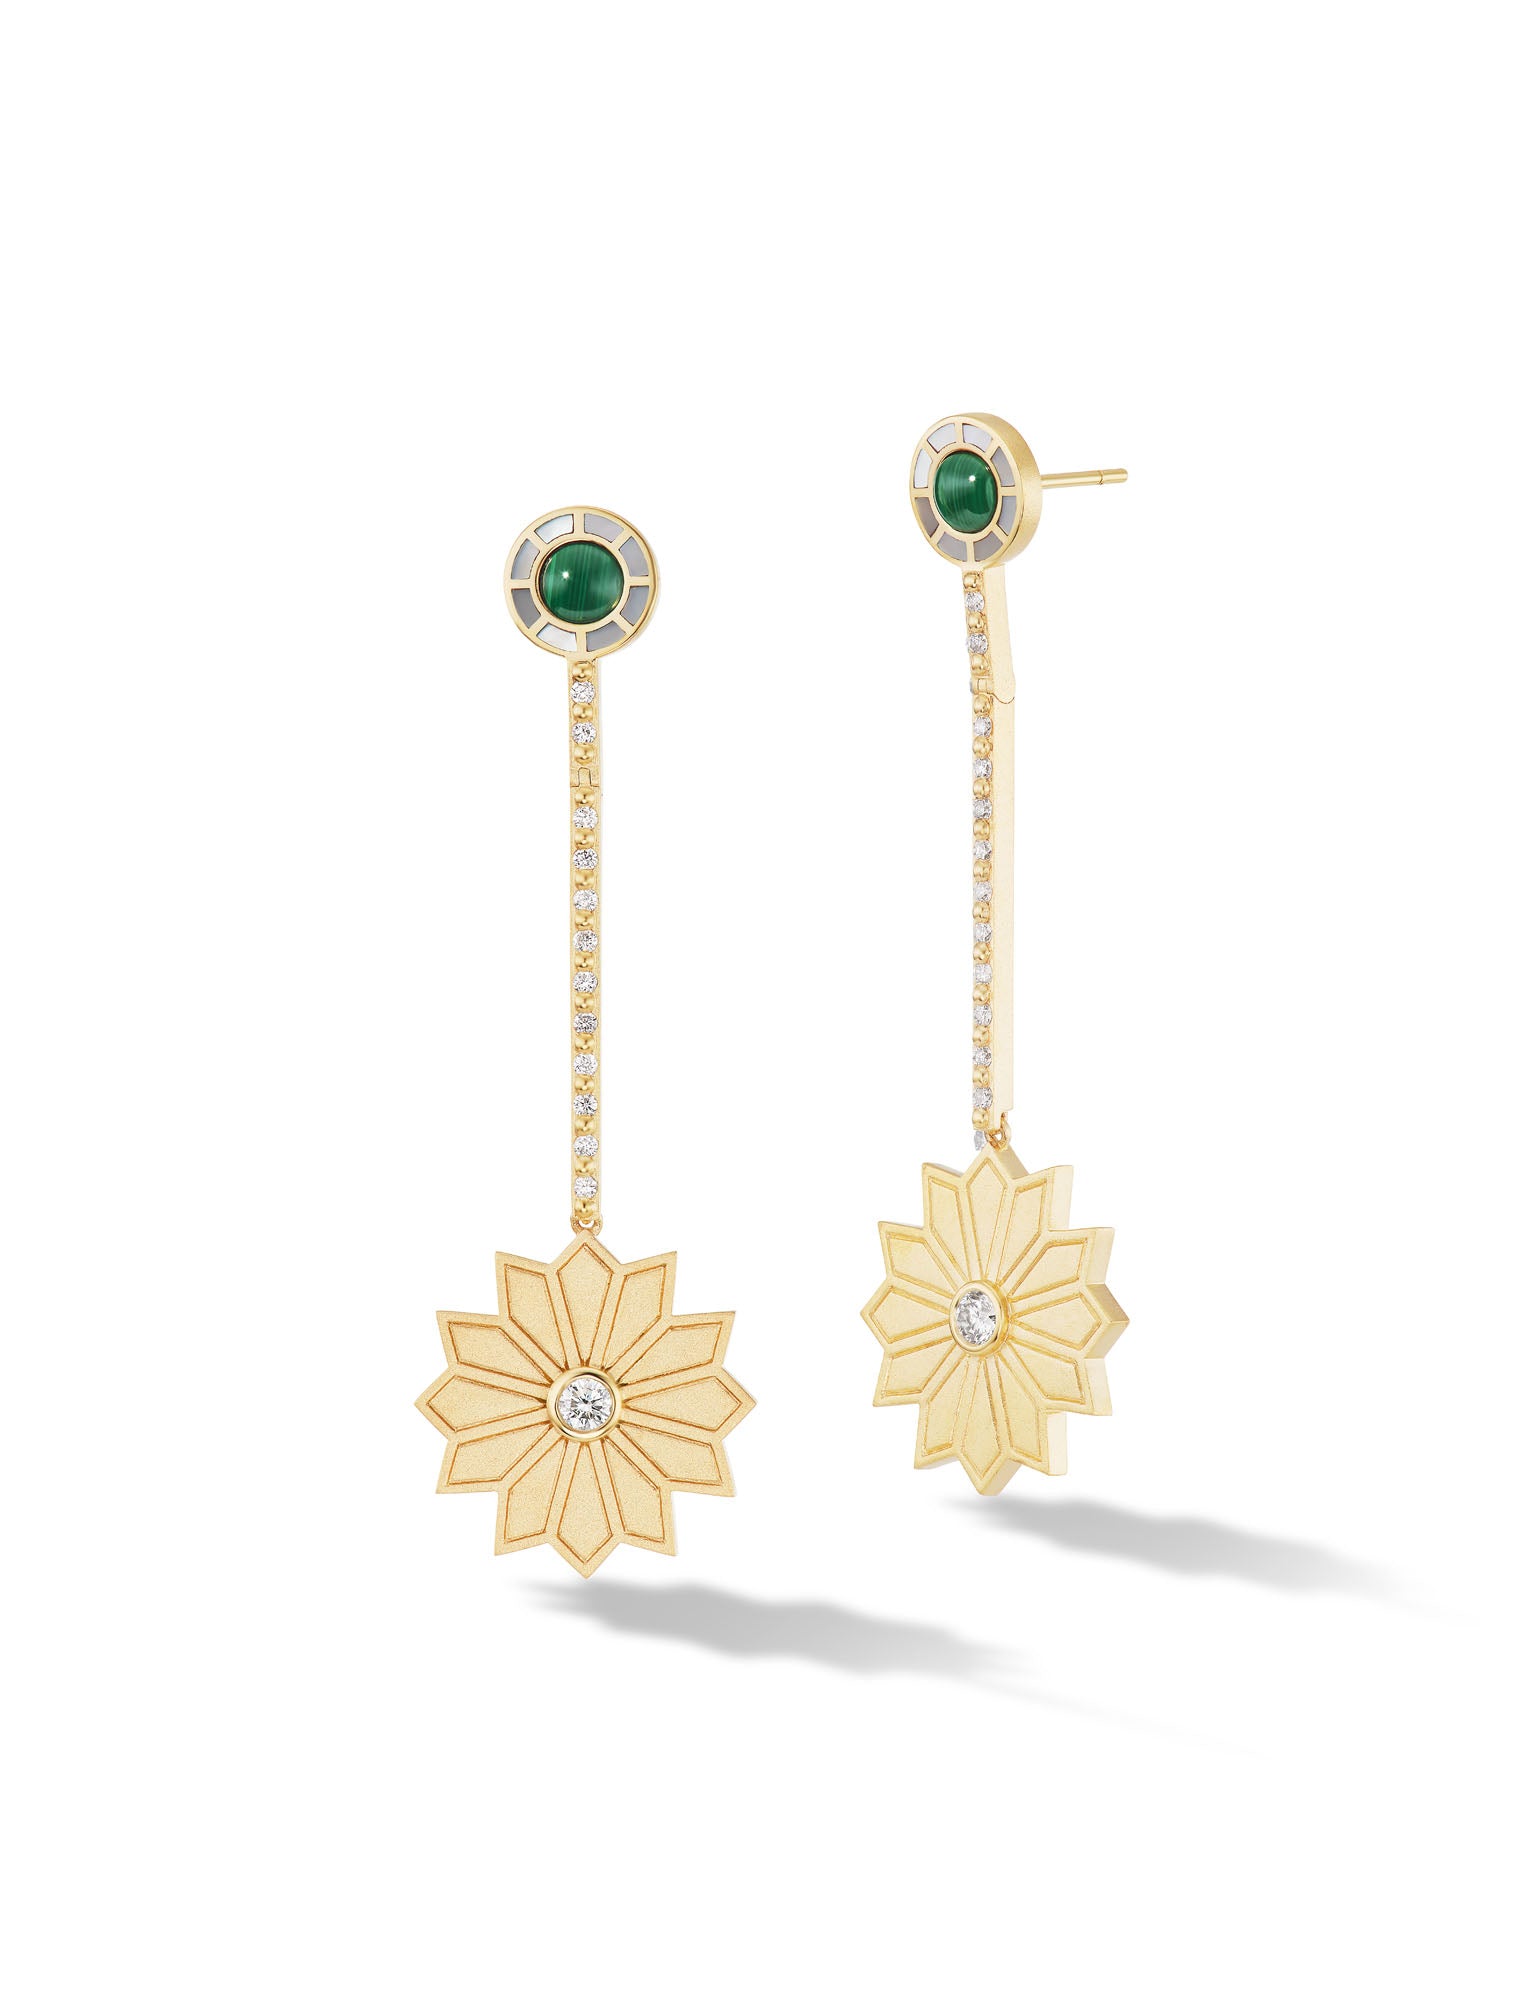 Hoop Earrings Origin|18k Gold Plated Twisted Hoop Earrings For Women -  Fashion Party Jewelry